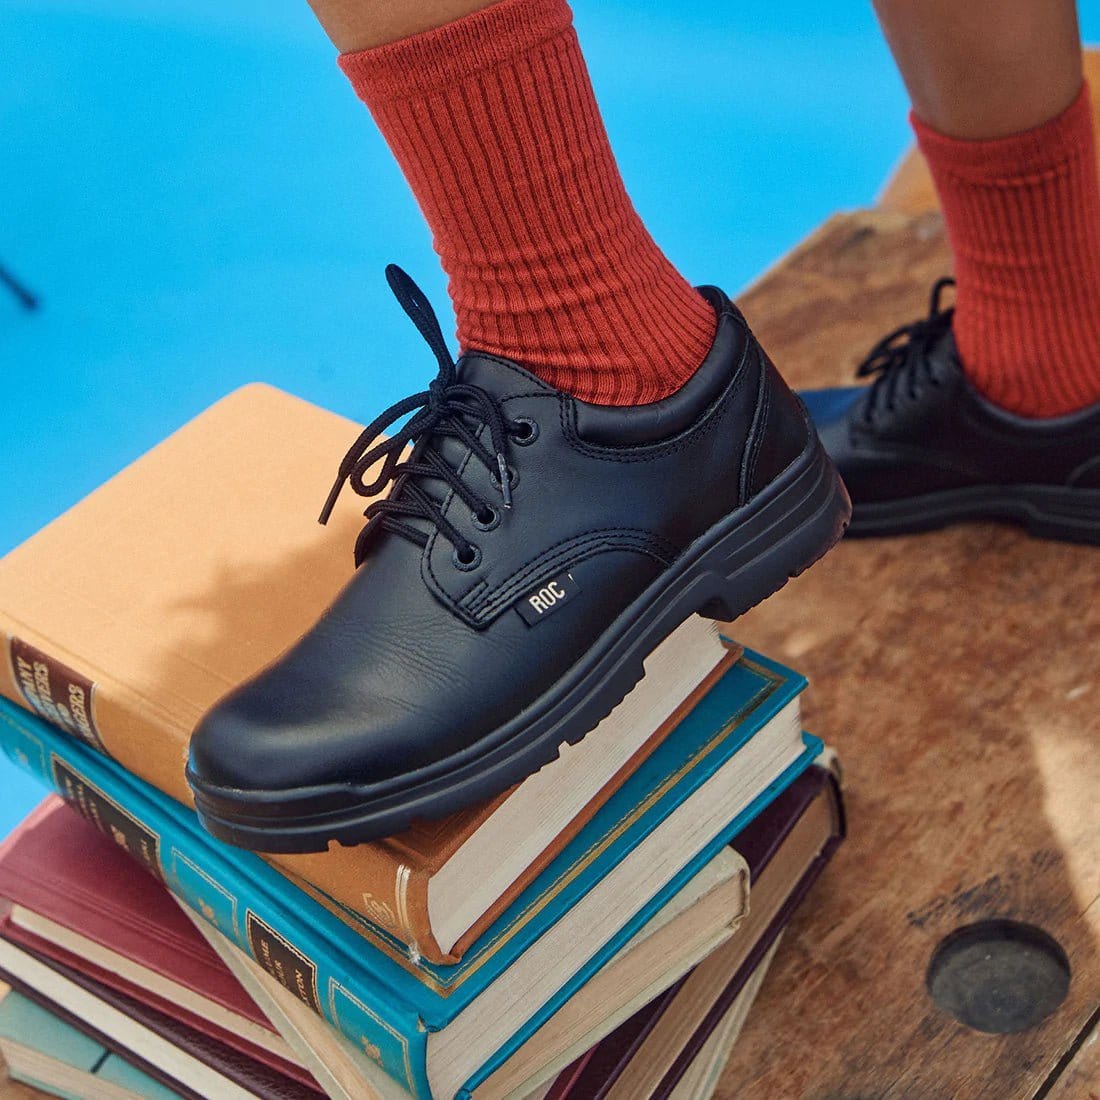 Roc Boots ROC BOOTS JUNIOR RIGOUR BLACK LACE LEATHER SCHOOL SHOES - INSPORT